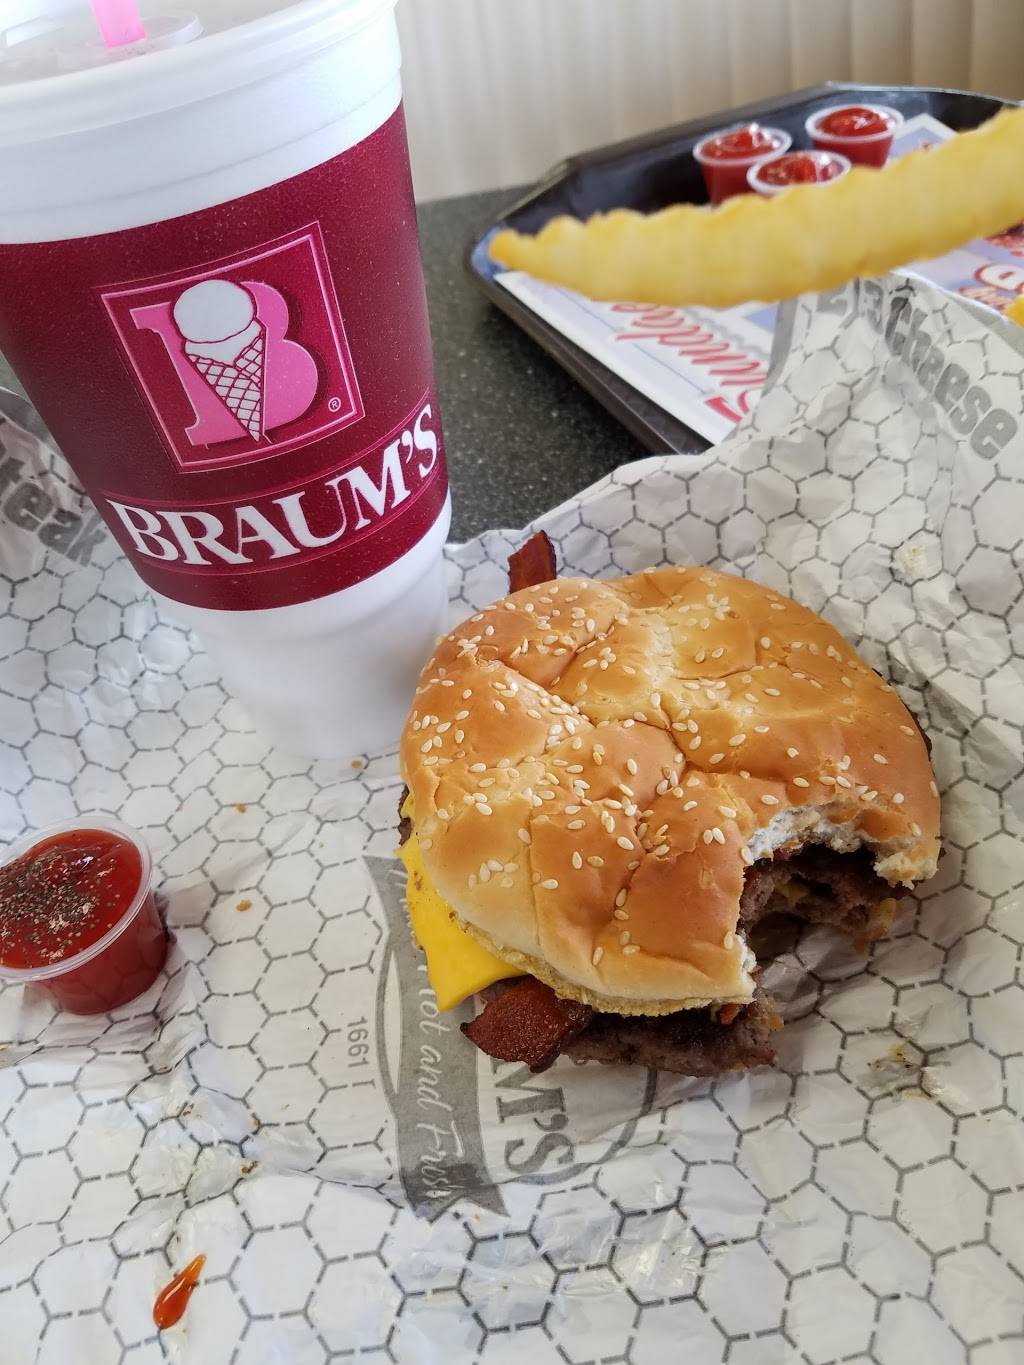 Braums Ice Cream & Burger Restaurant | restaurant | 710 N, US-75, Denison, TX 75020, USA | 9034637055 OR +1 903-463-7055